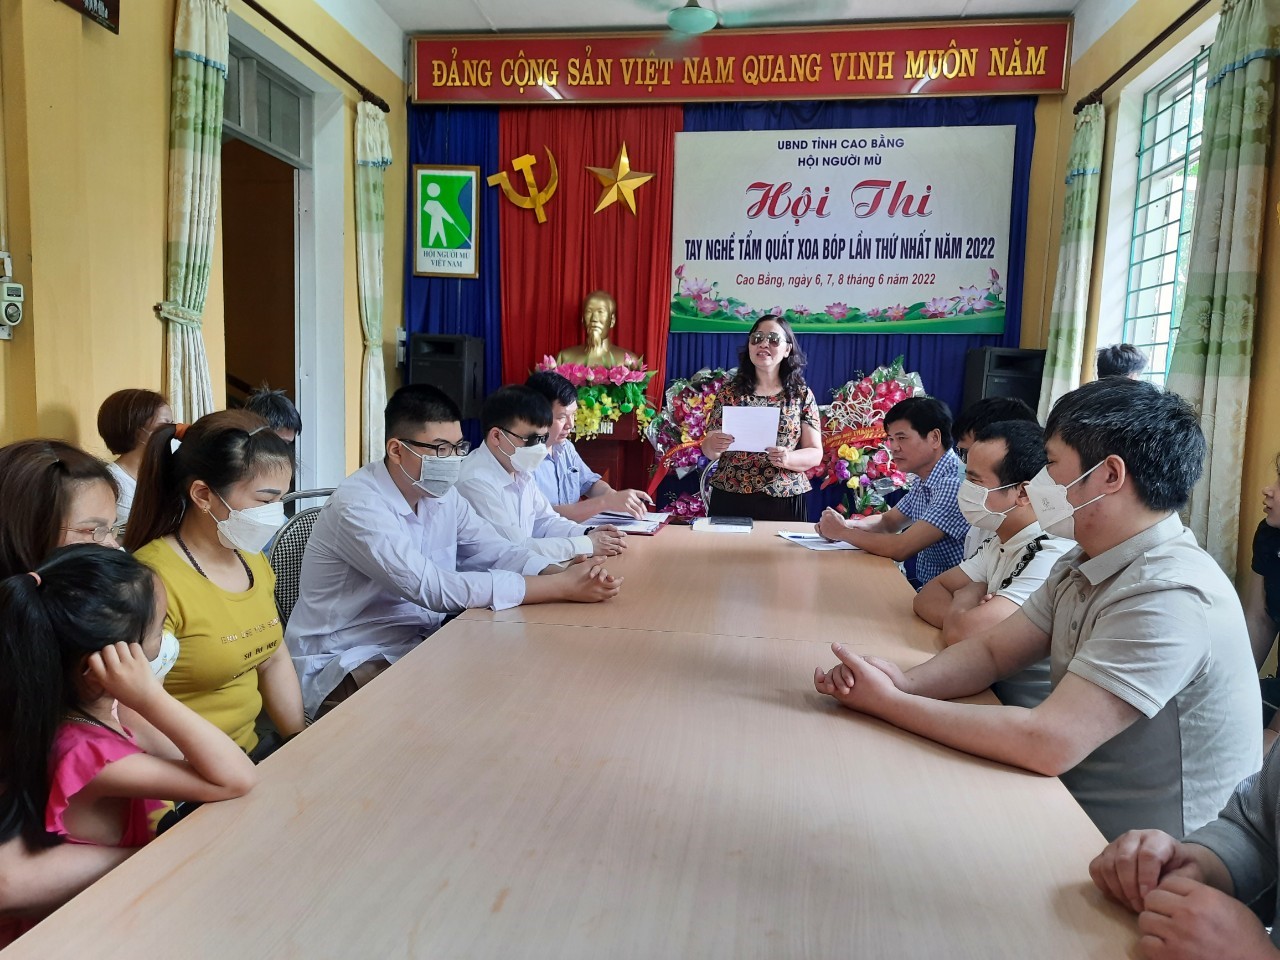 Hình ảnh: Tỉnh hội Cao Bằng tổ chức hội thi tay nghề Tẩm quất xoa bóp lần thứ nhất 